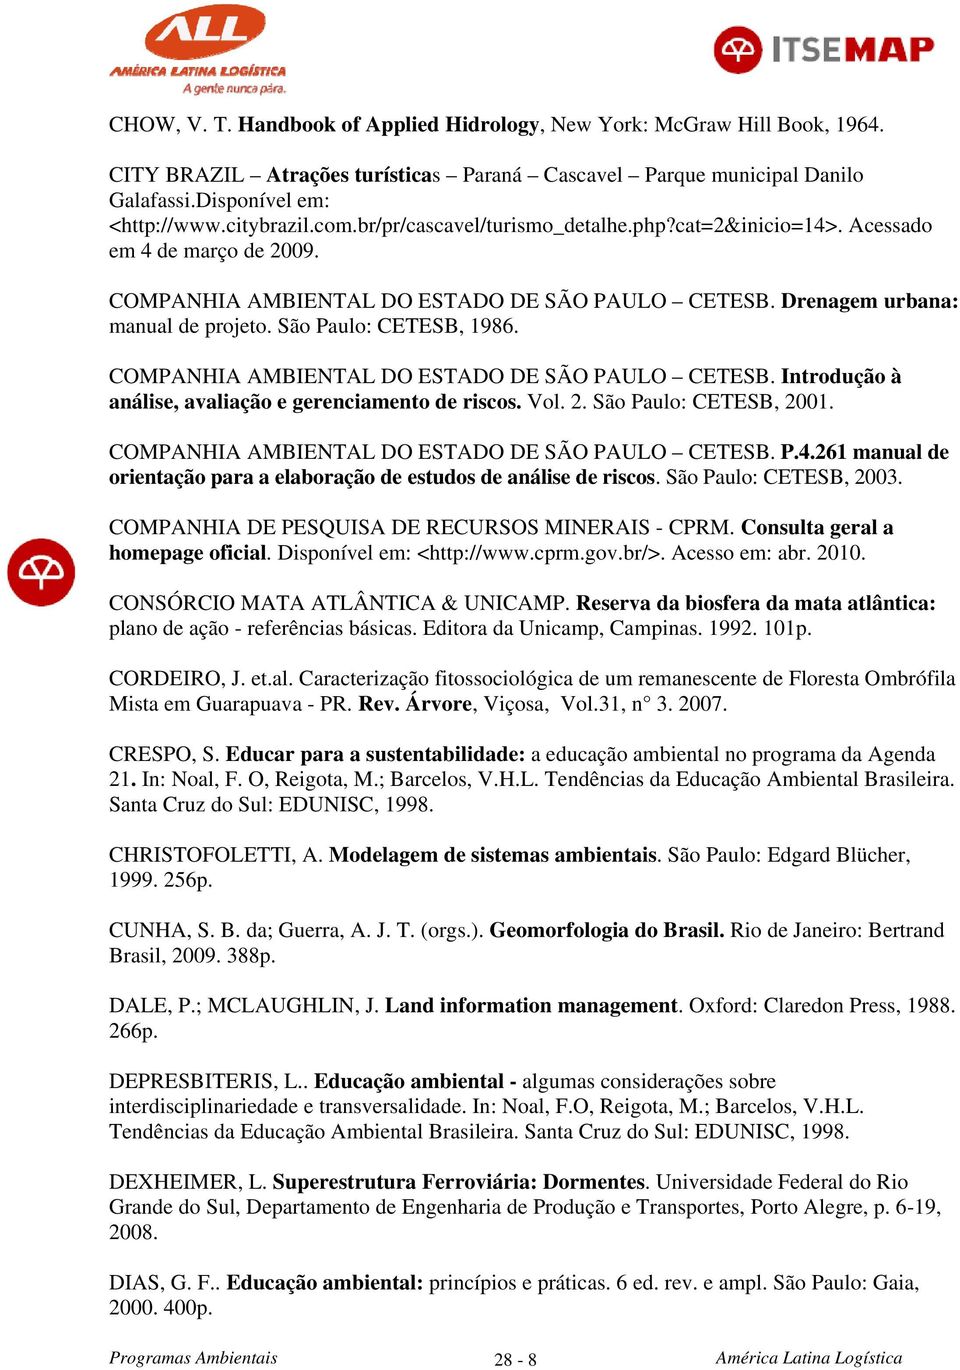 COMPANHIA AMBIENTAL DO ESTADO DE SÃO PAULO CETESB. Introdução à análise, avaliação e gerenciamento de riscos. Vol. 2. São Paulo: CETESB, 2001. COMPANHIA AMBIENTAL DO ESTADO DE SÃO PAULO CETESB. P.4.